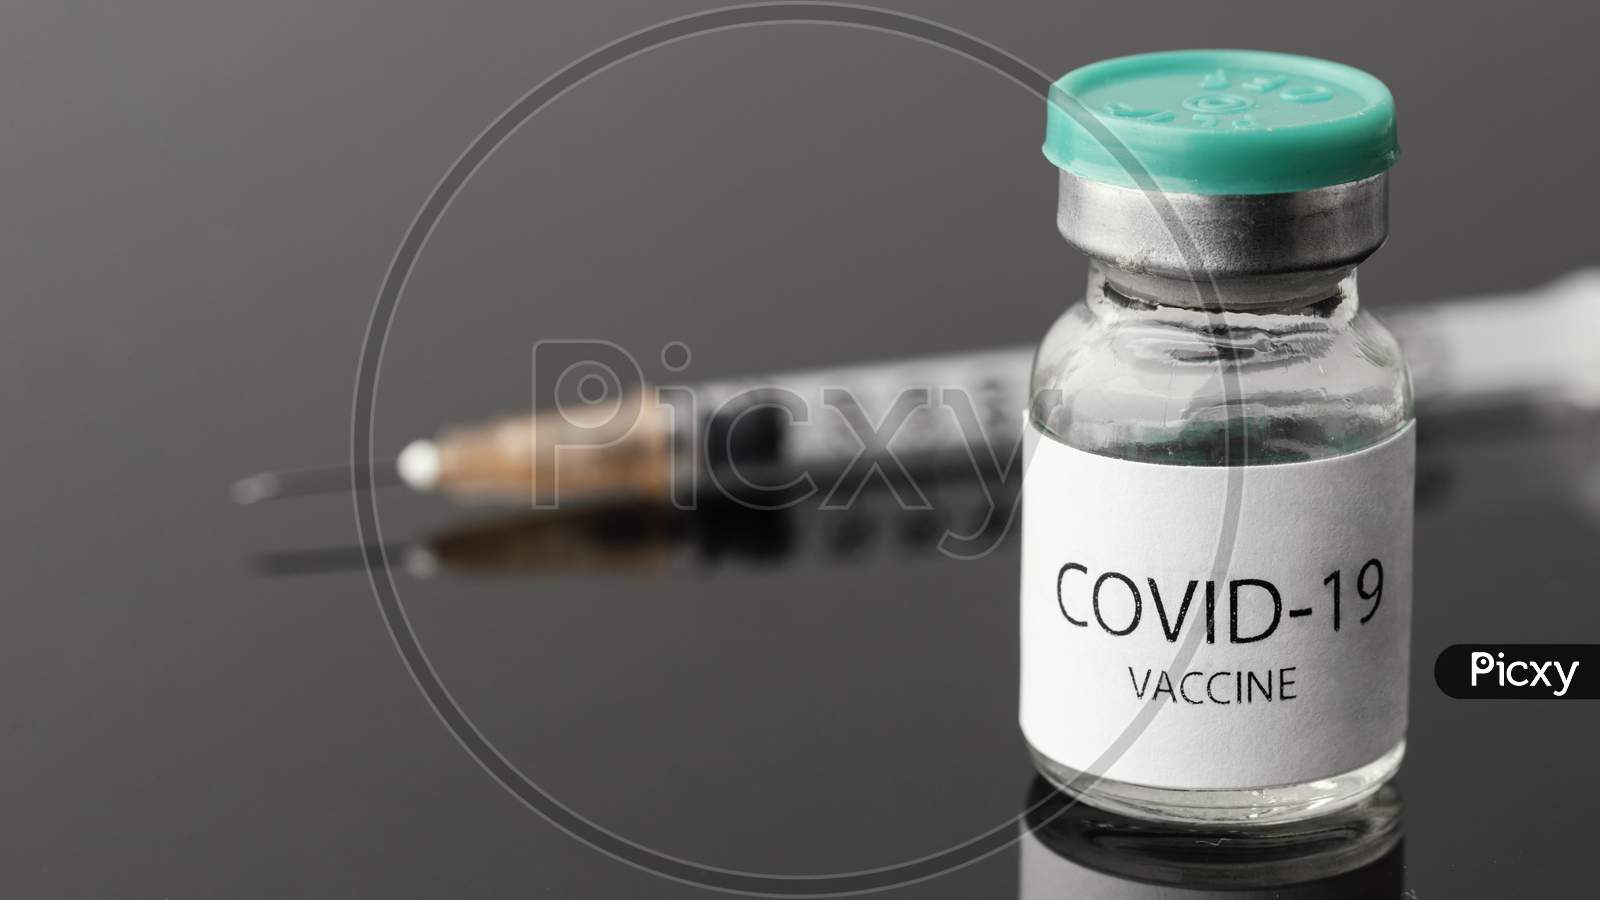 Covid-19 Vaccine Image